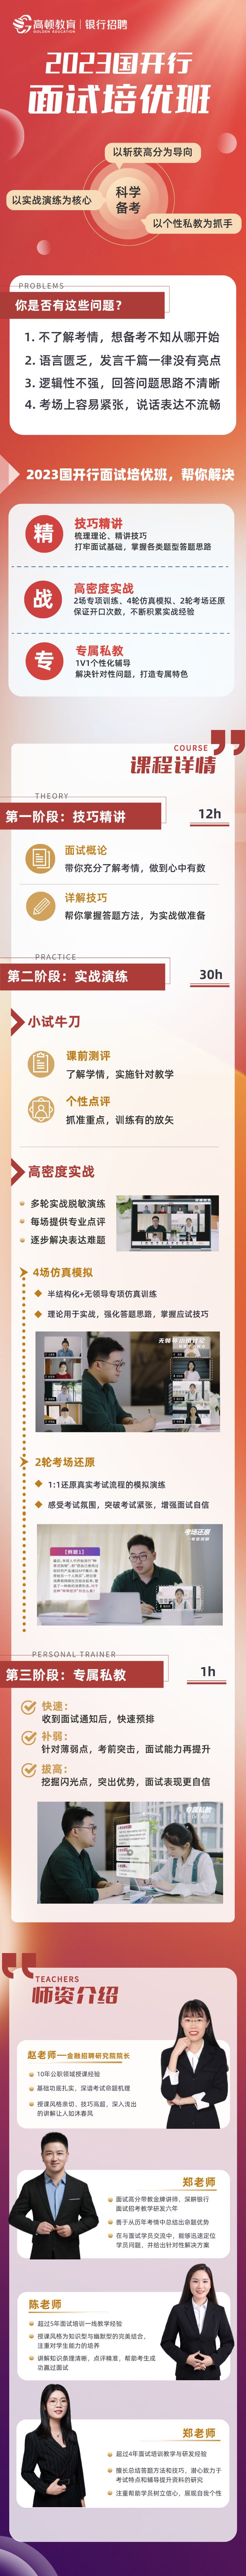 https://simg01.gaodunwangxiao.com/uploadfiles/product-center/202211/09/e9c71_20221109184029.png